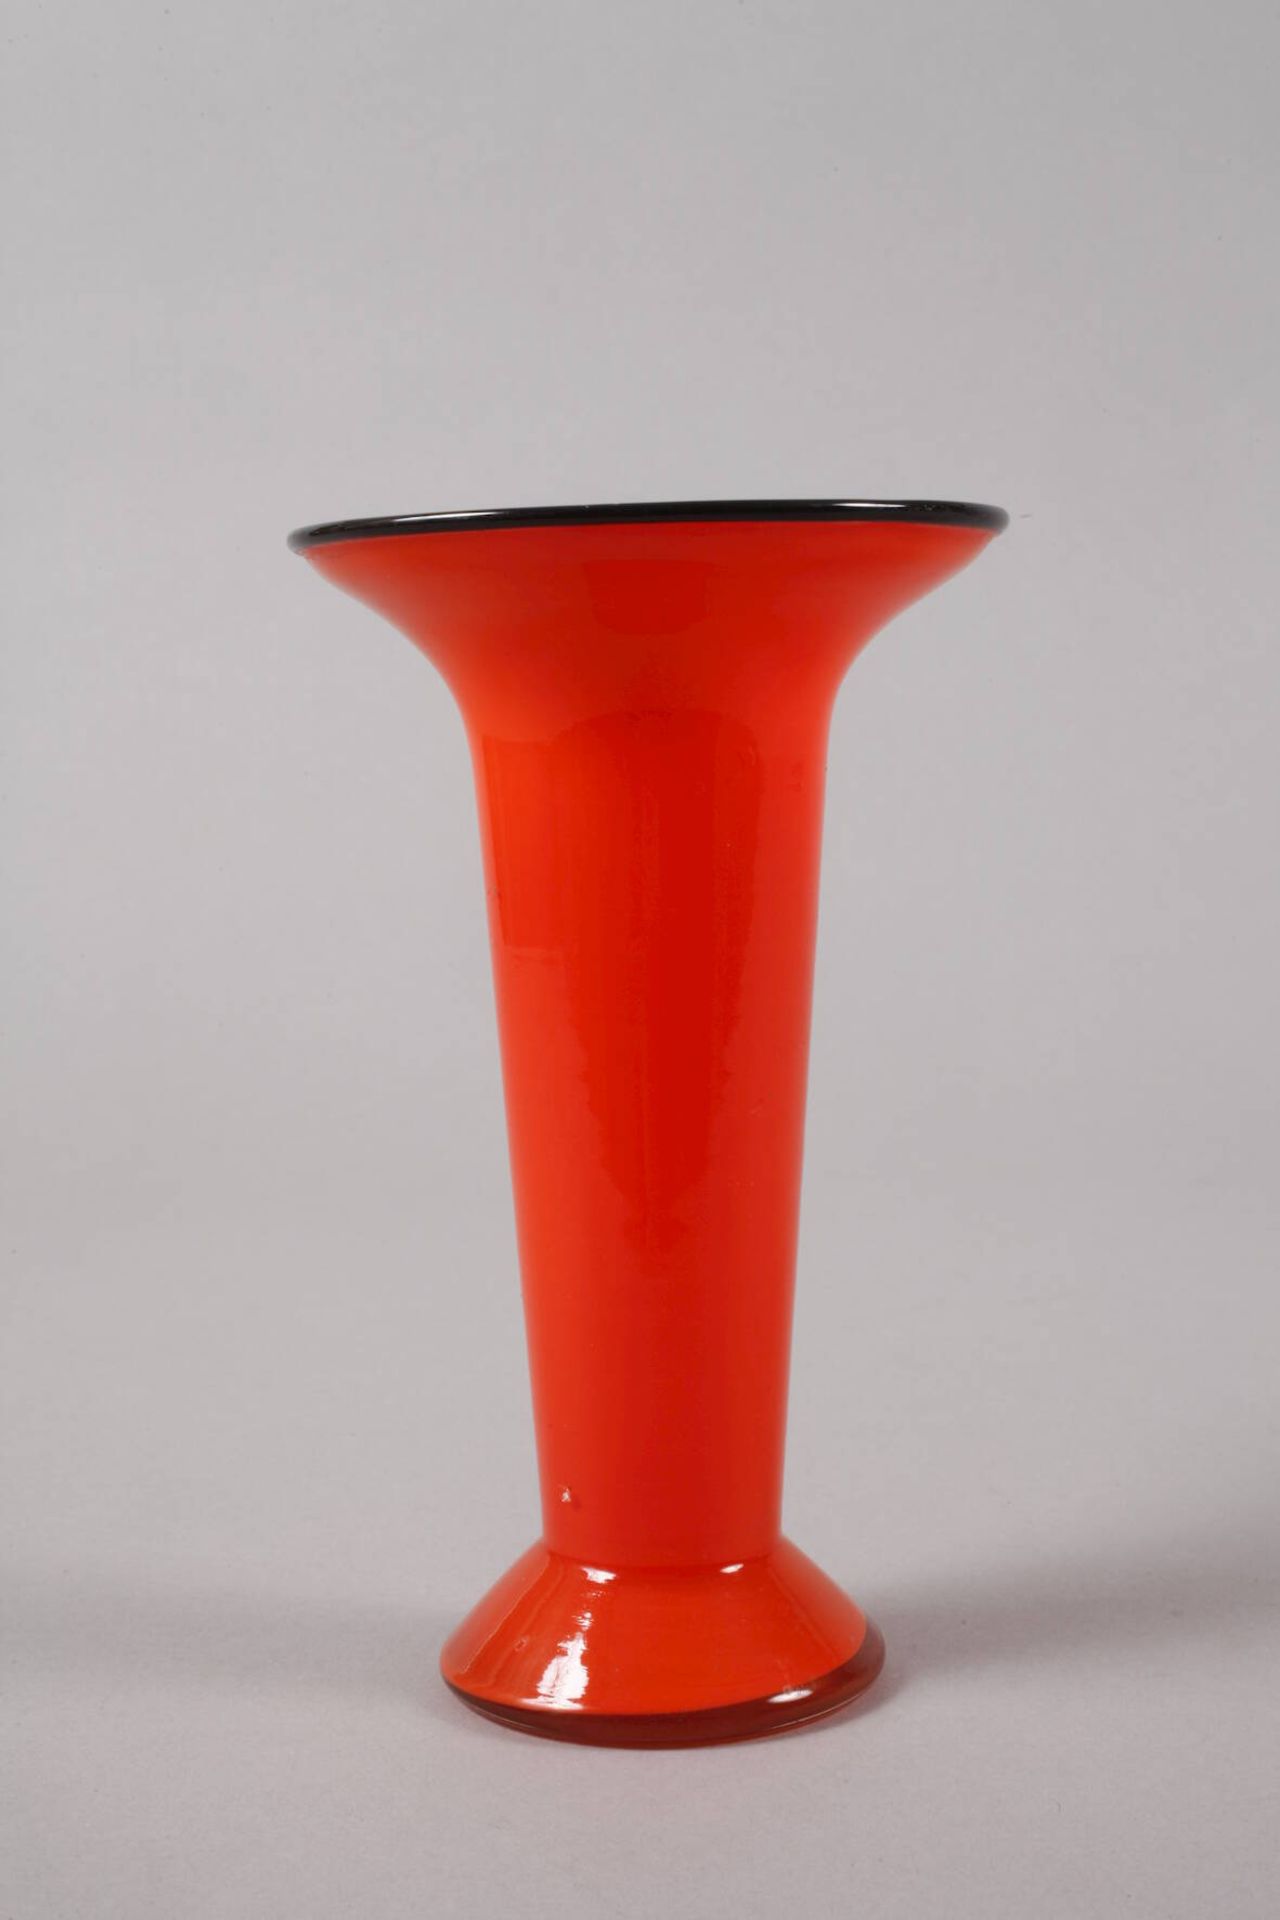 Loetz Wwe. Vase "Tango" - Image 2 of 4